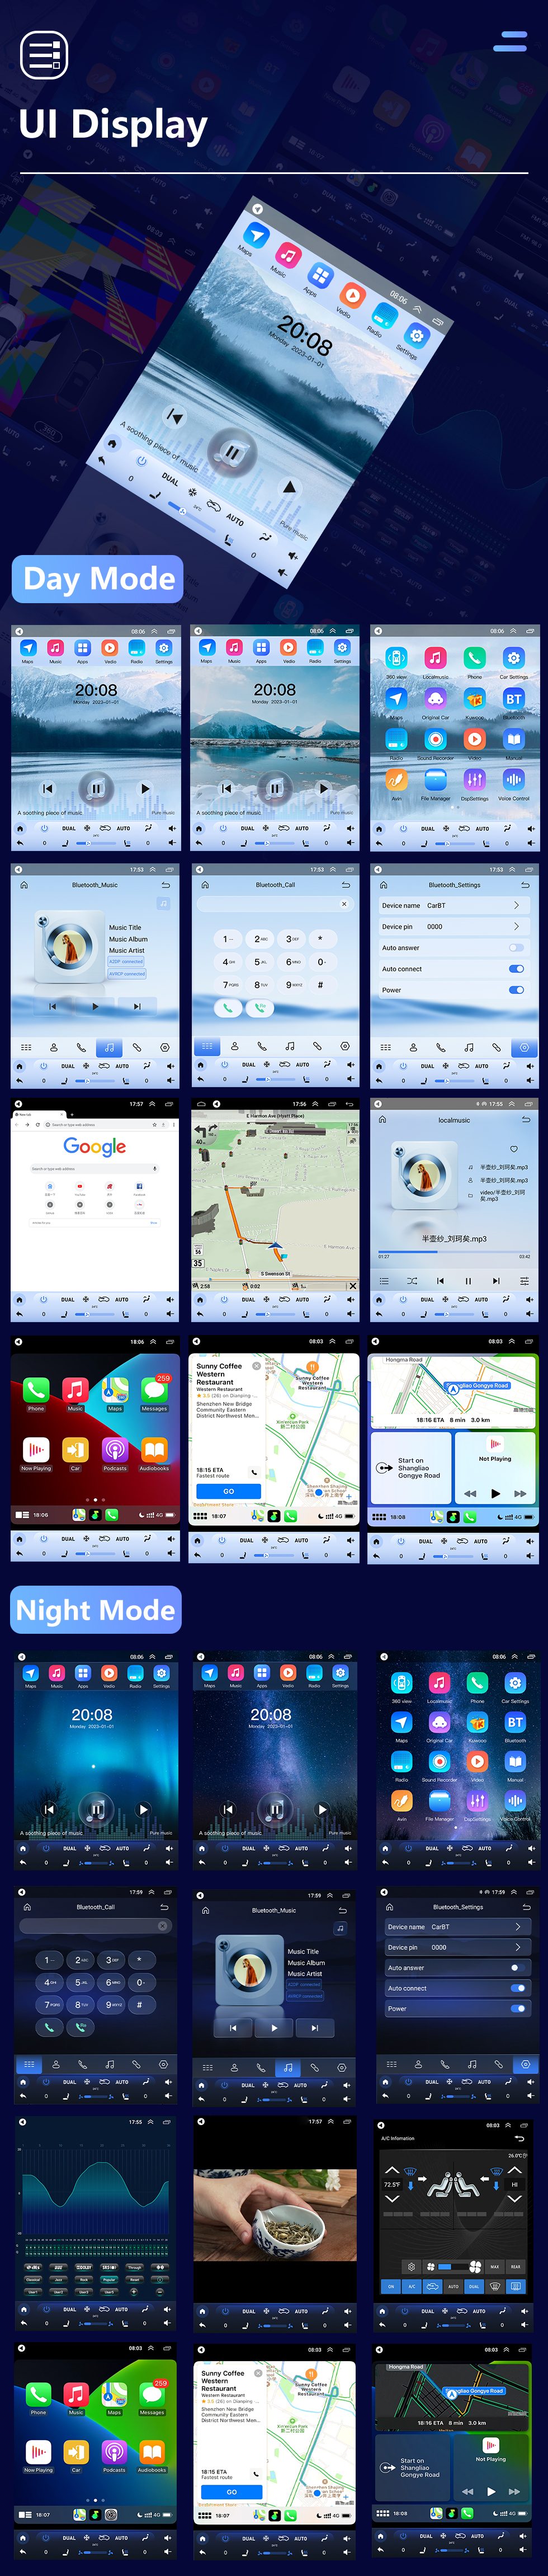 Seicane Android 10.0 9.7 pulgadas para 2016 Chery Arrizo 5 Radio con pantalla táctil HD Sistema de navegación GPS Soporte Bluetooth Carplay TPMS